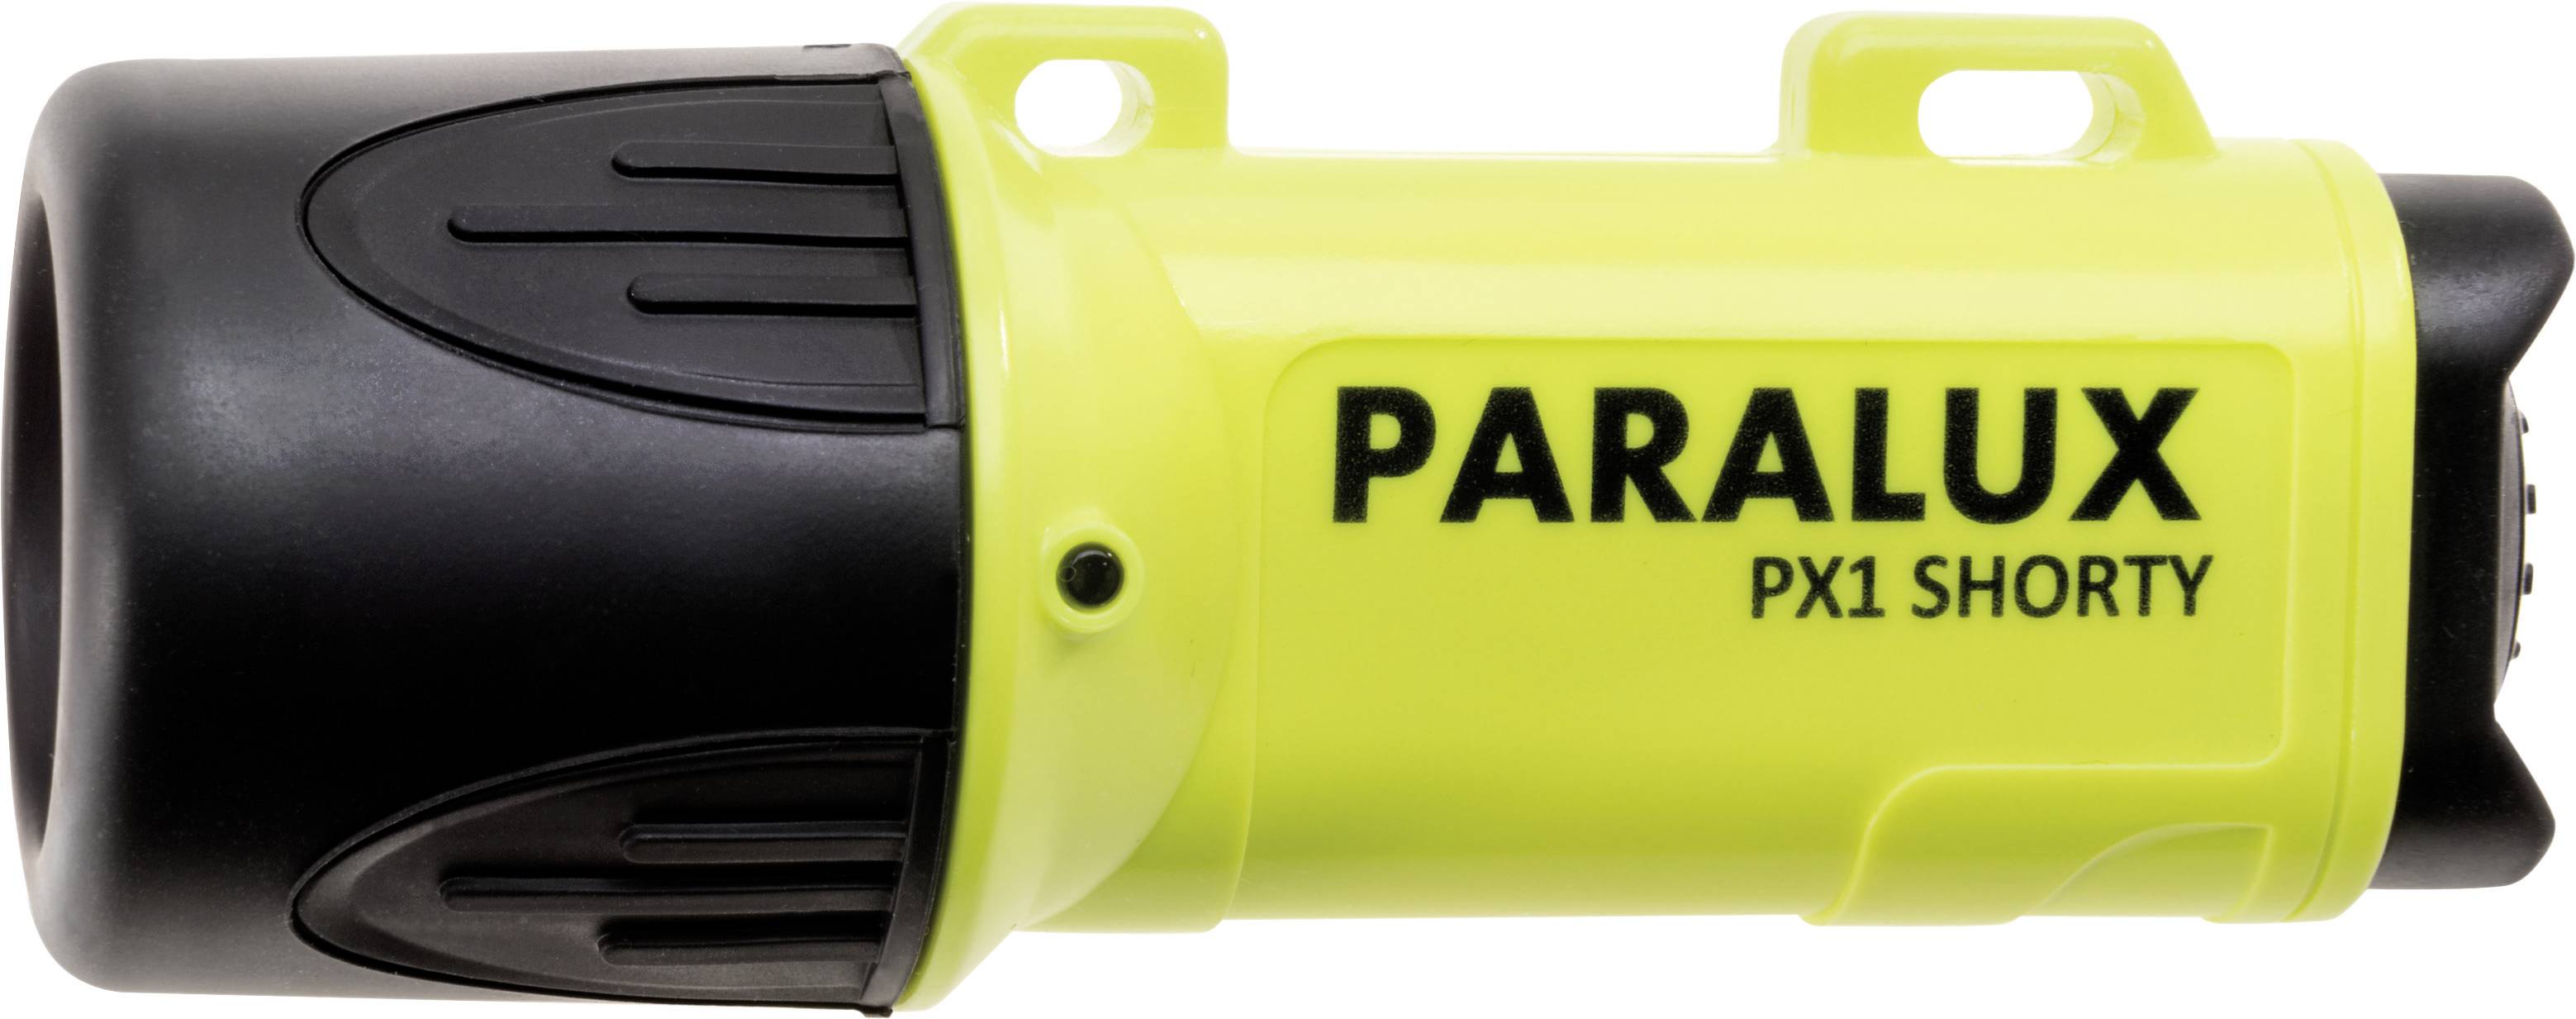 Bezpečnostné svietidlo Paralux PX1 Shorty